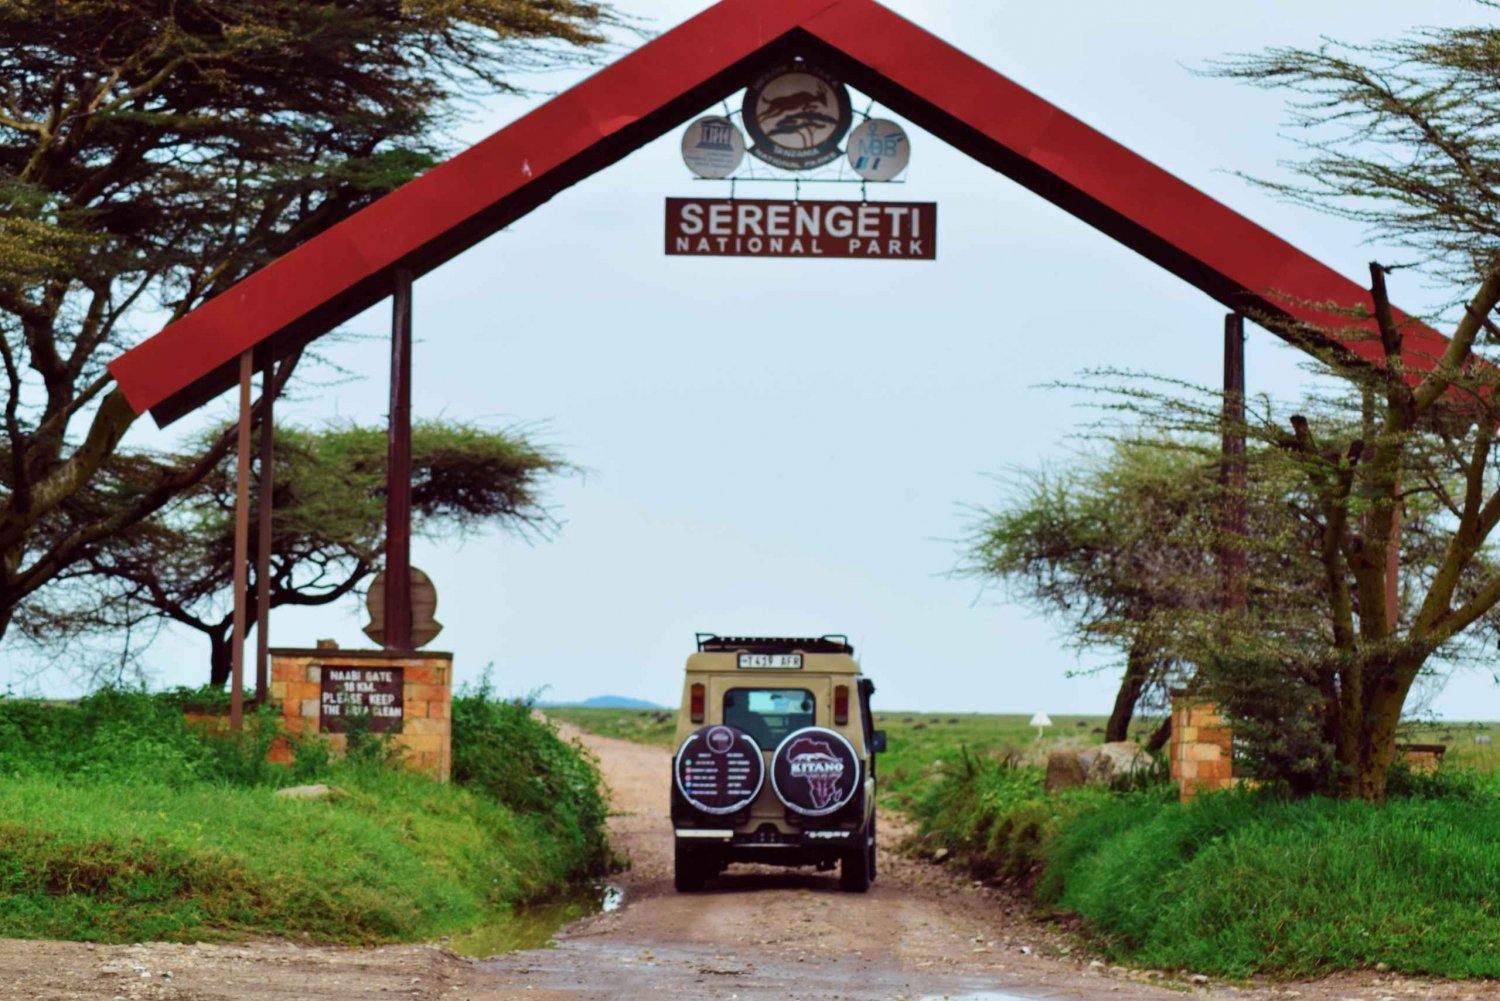 Safári de 3 dias no Serengeti saindo de Nairóbi